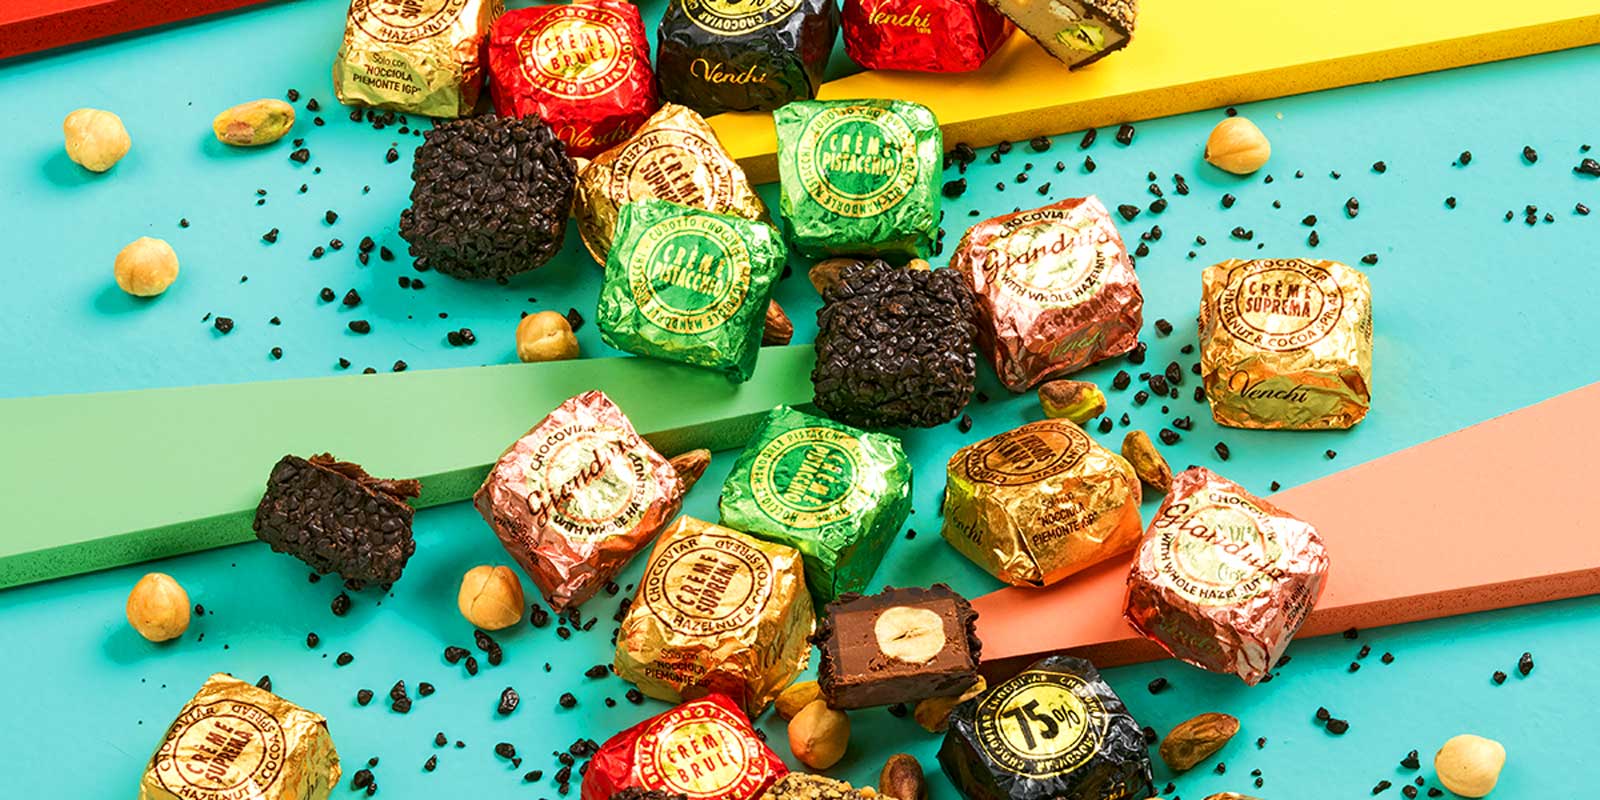 Venchi-choklad och praliner fran Piemonte Lackra, hemlagade och naturliga recept utformade for att hjalpa dig njuta.
Sedan 1878 har vi erbjudit stunder av gladje varje dag i perfekt italiensk stil, vi tanker pa ditt valbefinnande.